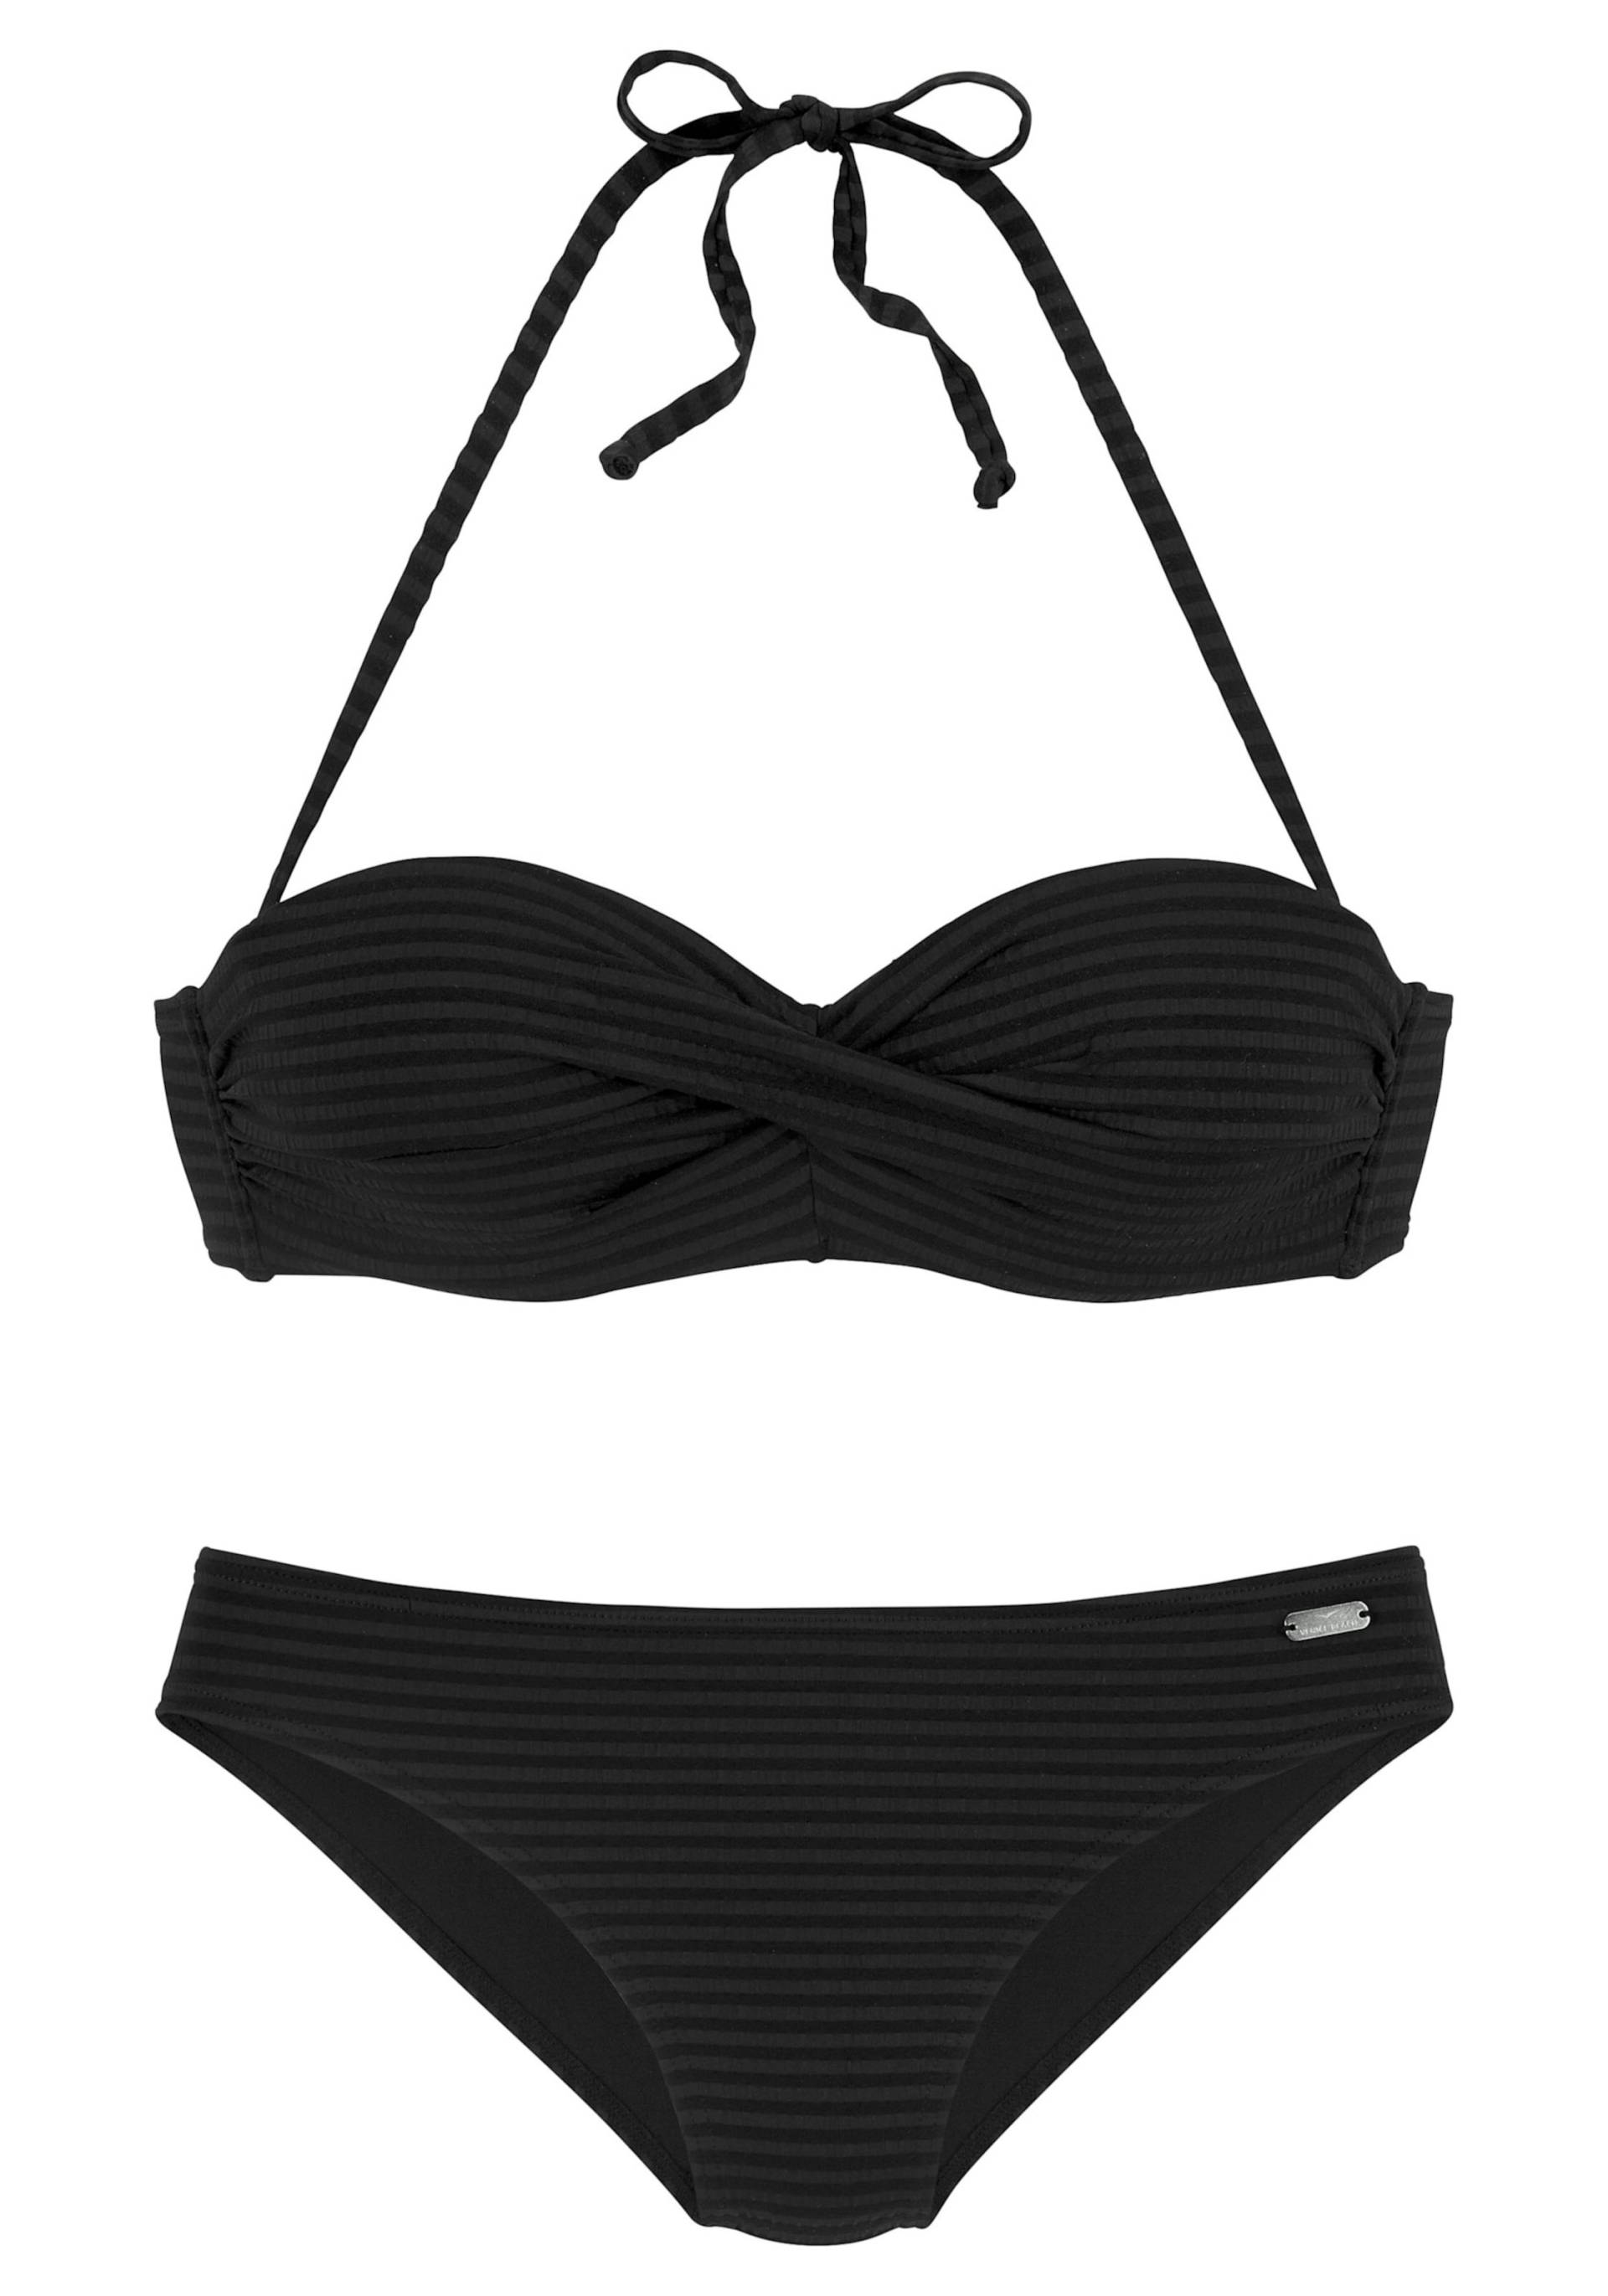 Bügel-Bandeau-Bikini in schwarz von Venice Beach